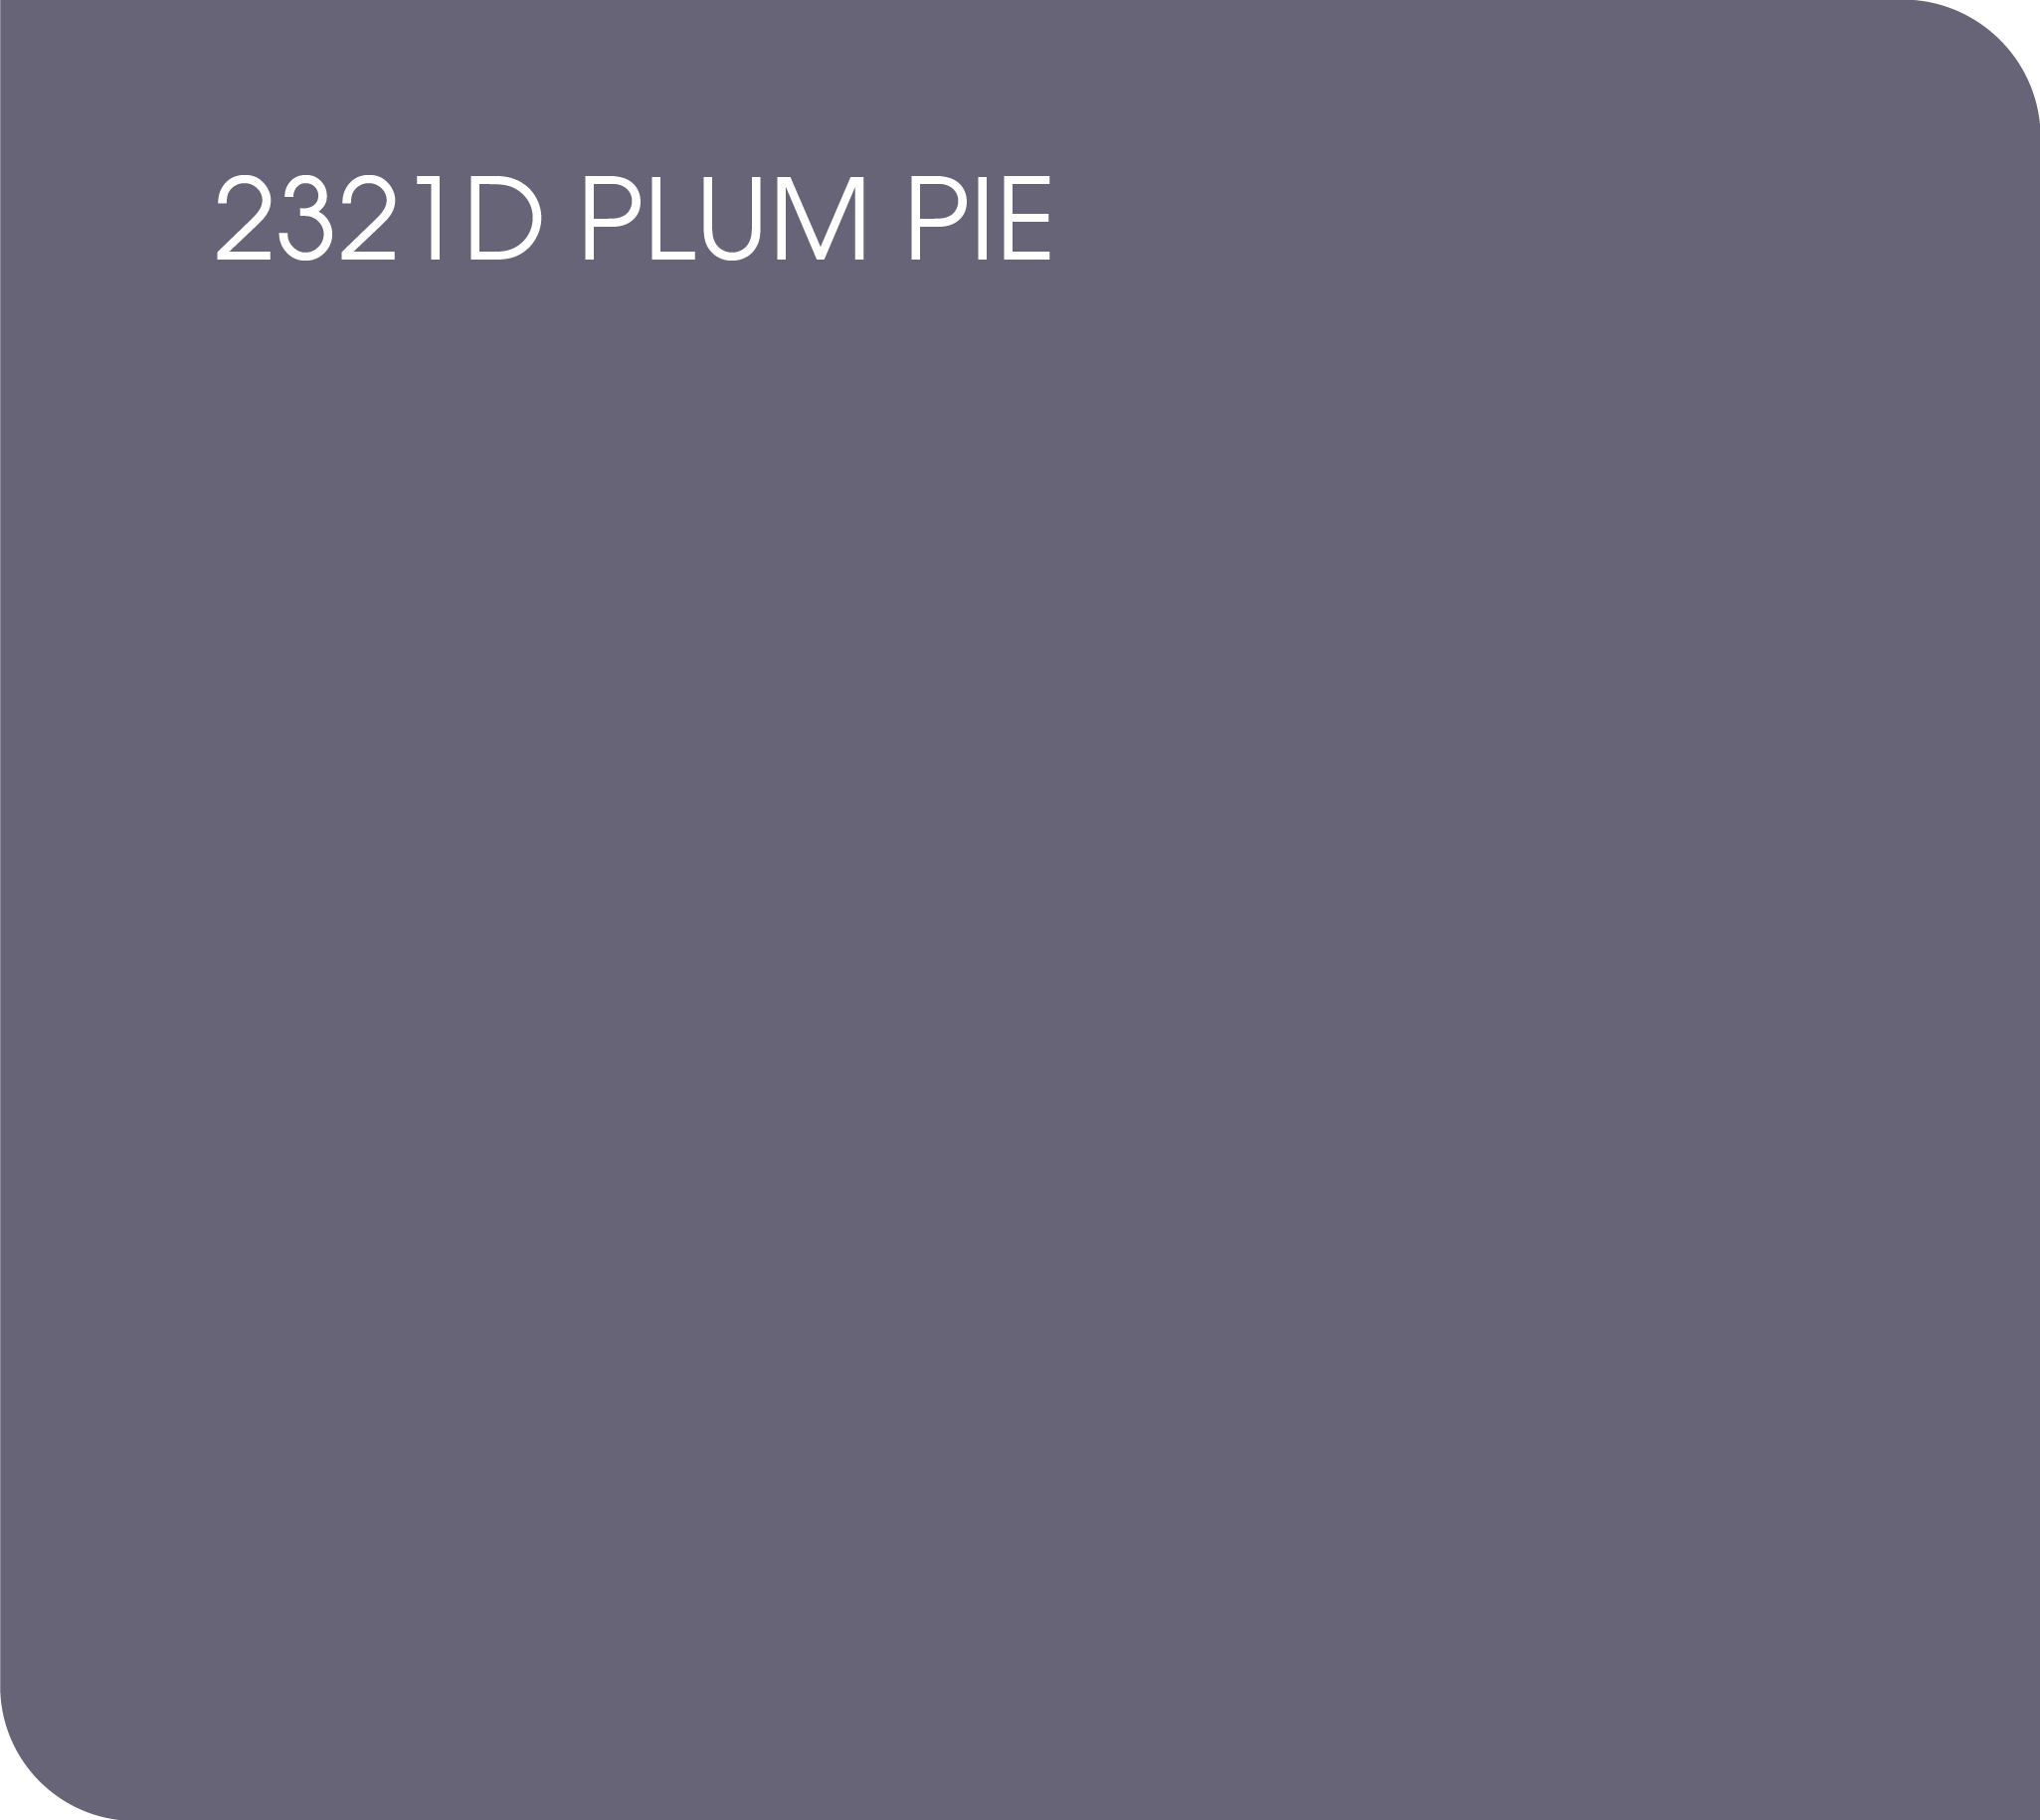 plum pie